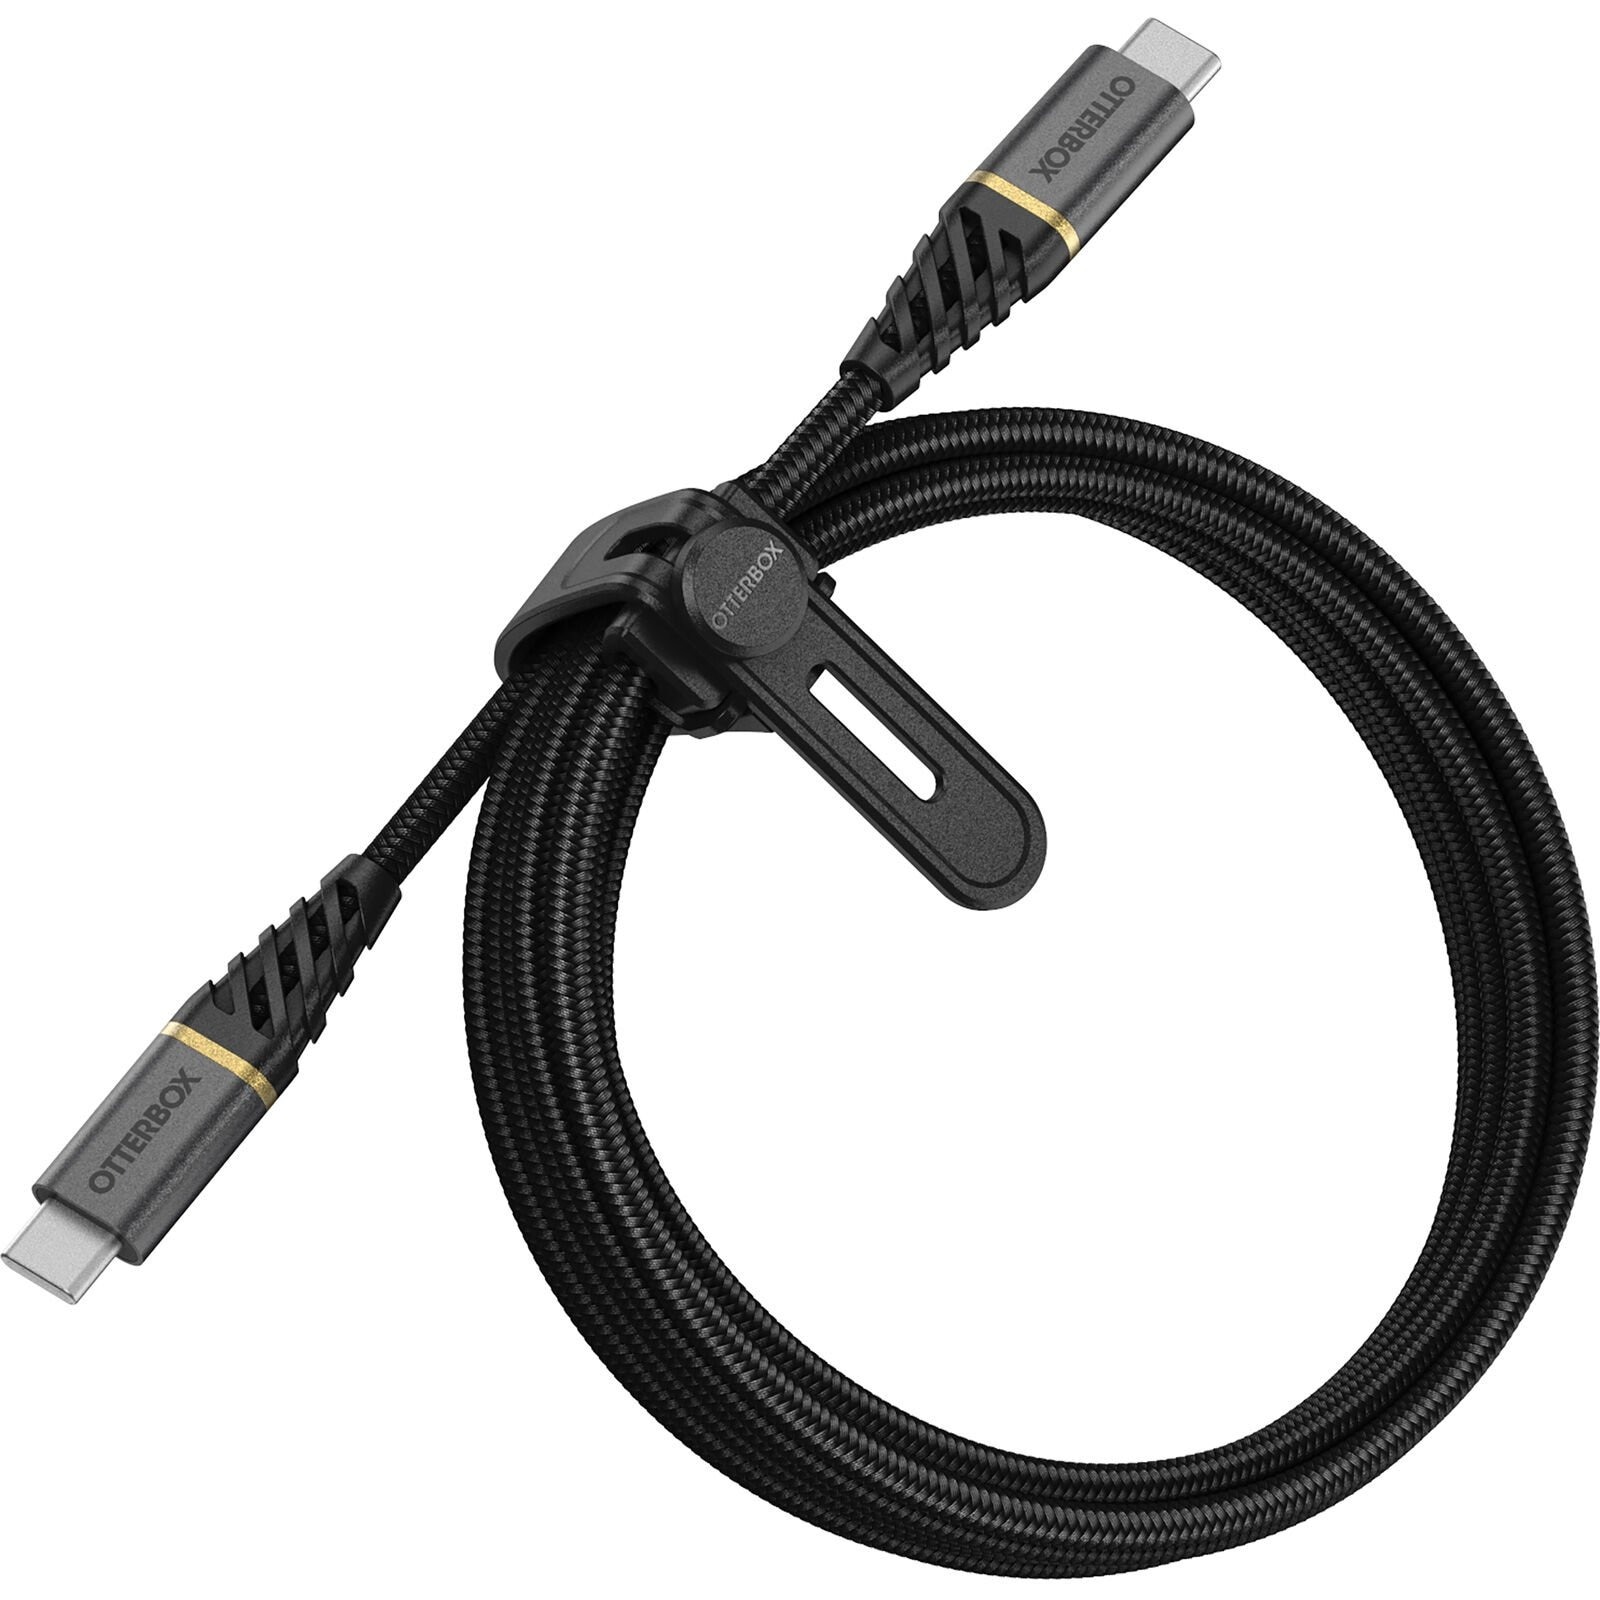 USB-C -> USB-C Kaapeli 2m Premium Fast Charge musta